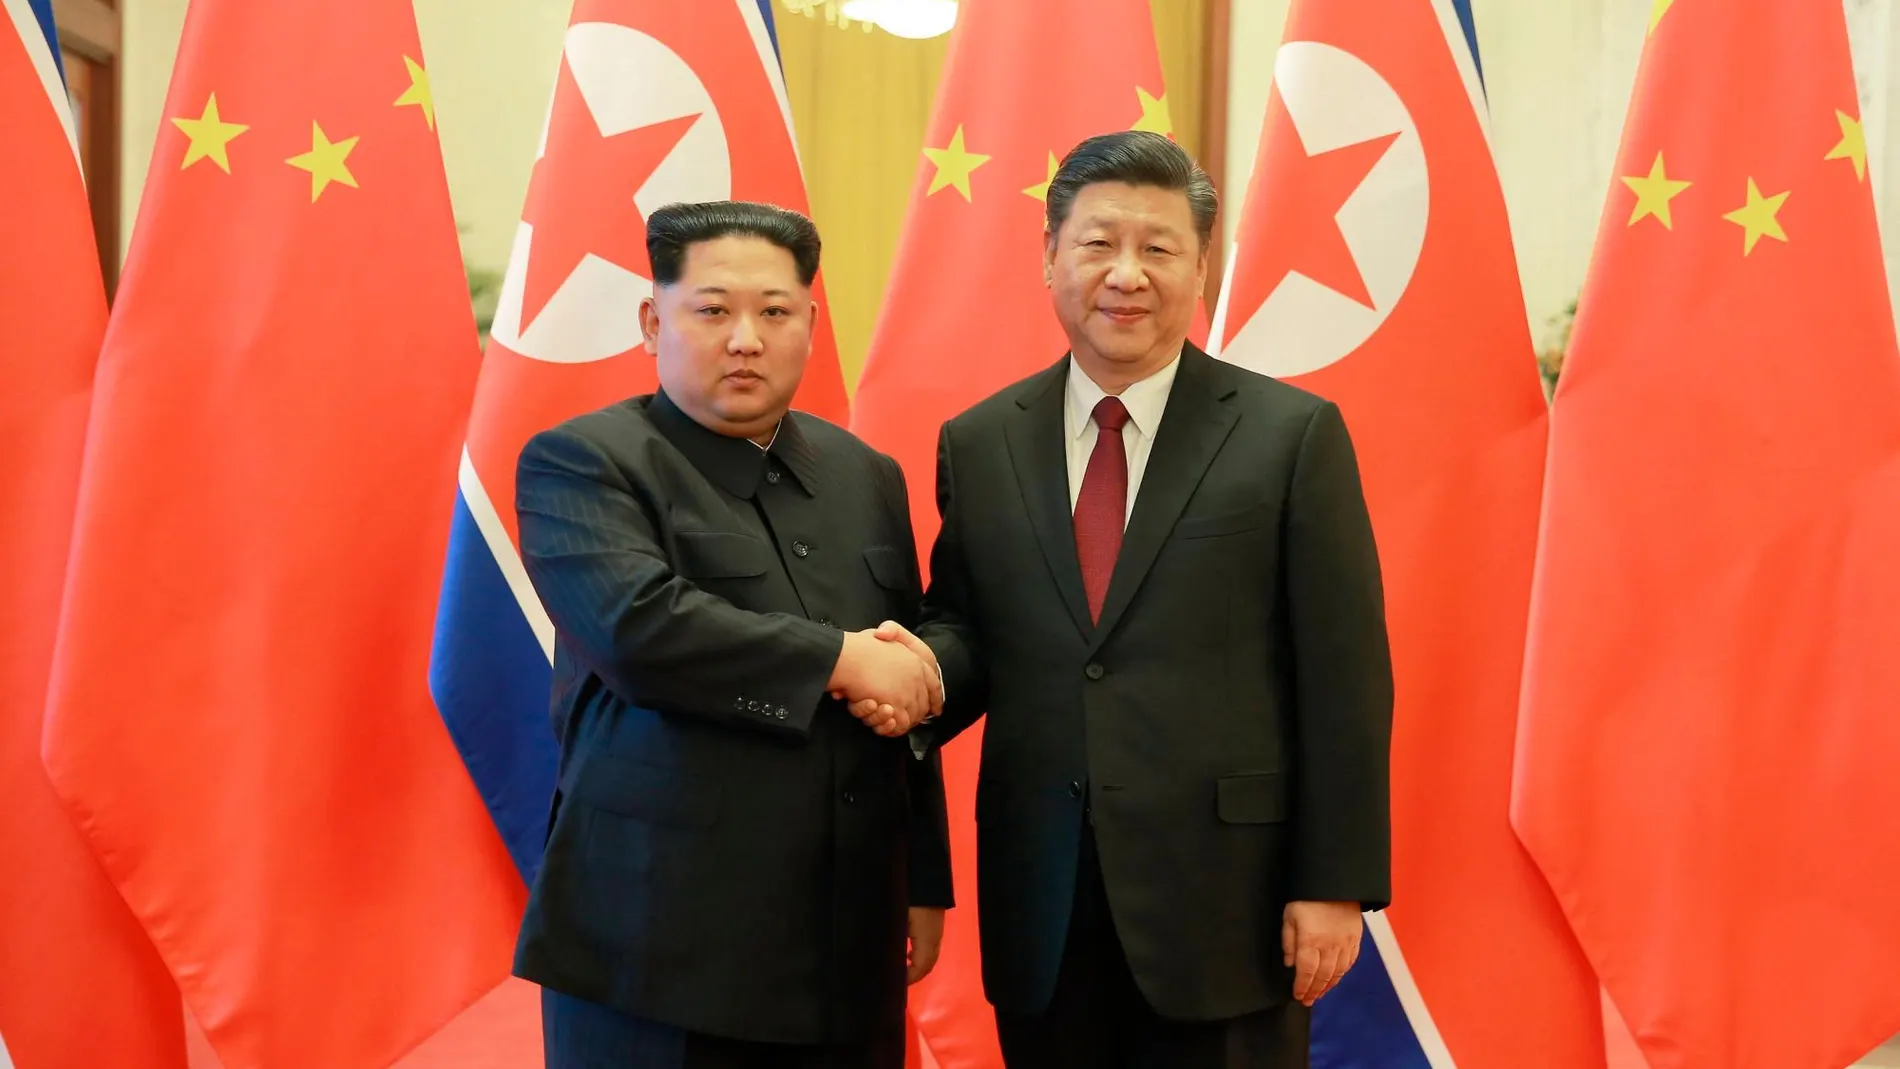 El líder norcoreano Kim Jong-un estrecha la mano del presidente Chino Xi Jinping durante una visita en Pekín en marzo de 2018